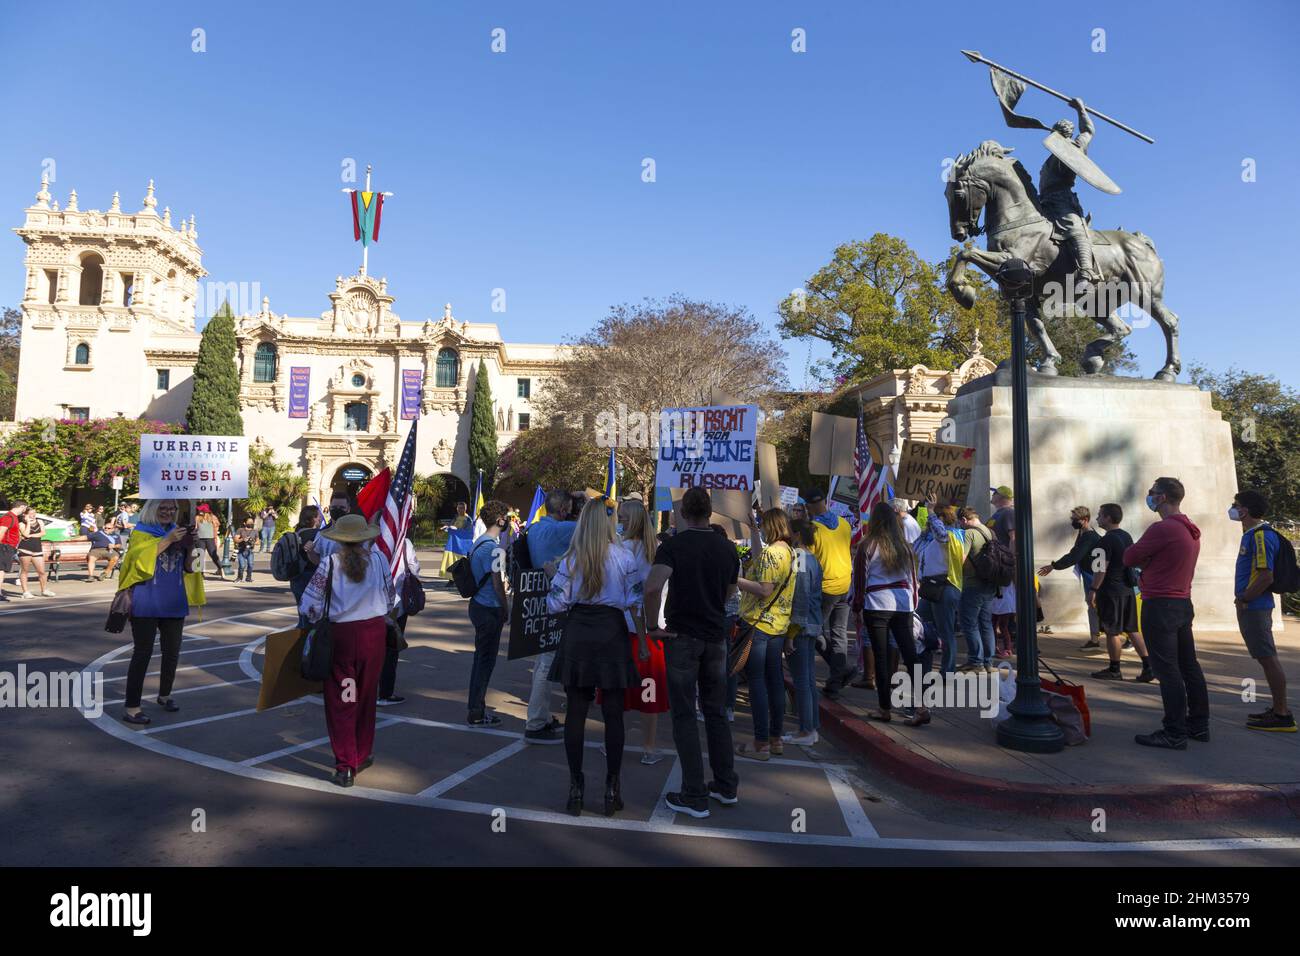 Stand mit Ukraine Rallye im San Diego Balboa Park. Ukrainische Volksgruppe versammelt sich in friedlicher Protestaktion gegen die russische Militärininvasion Stockfoto